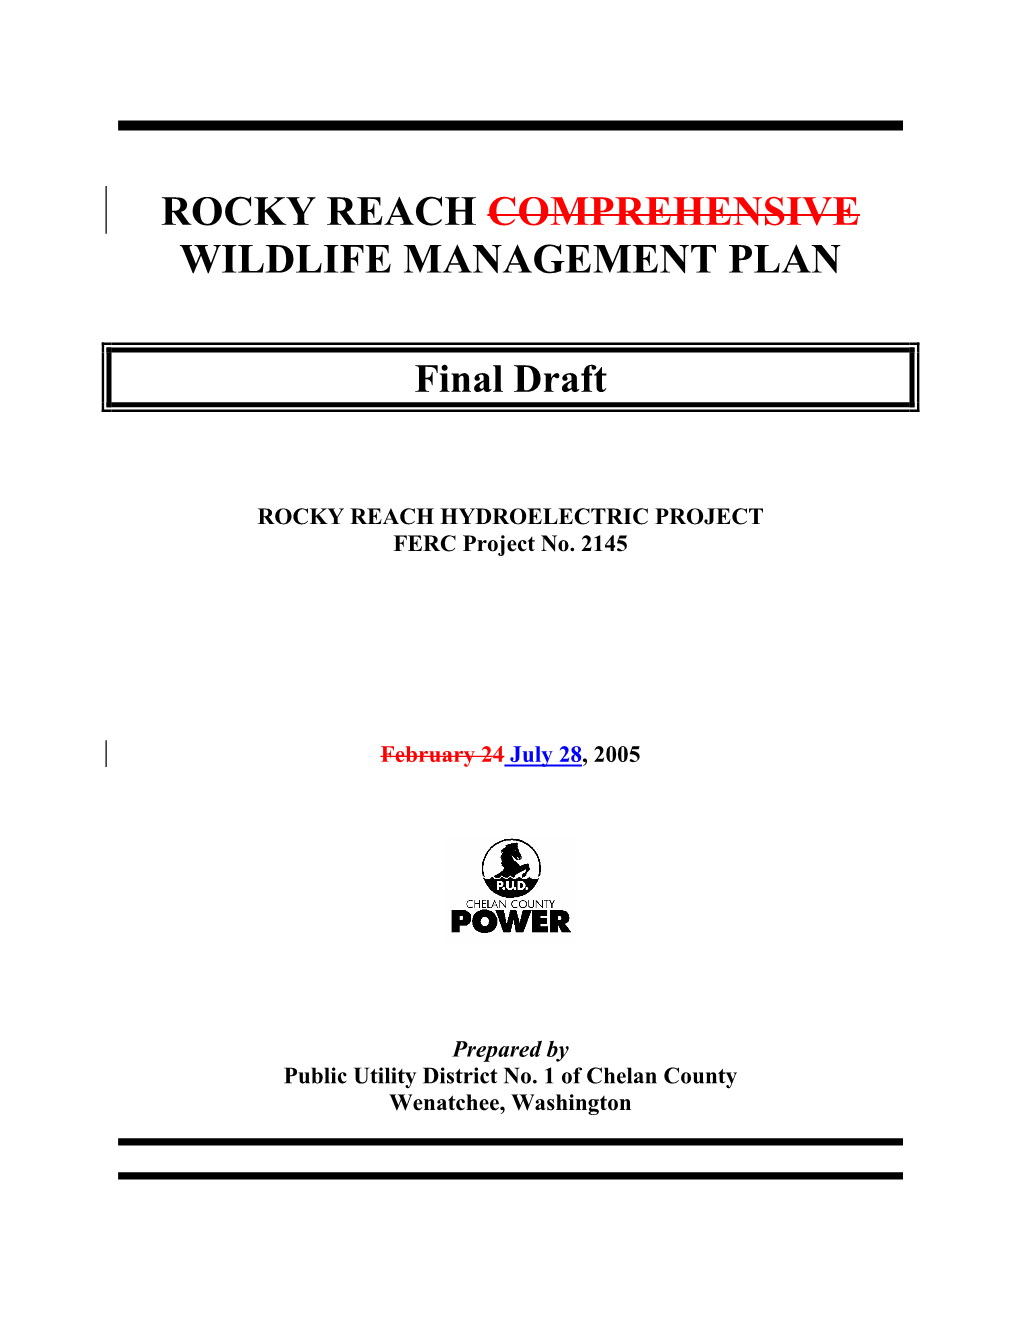 Rocky Reach Comprehensive Wildlife Management Plan